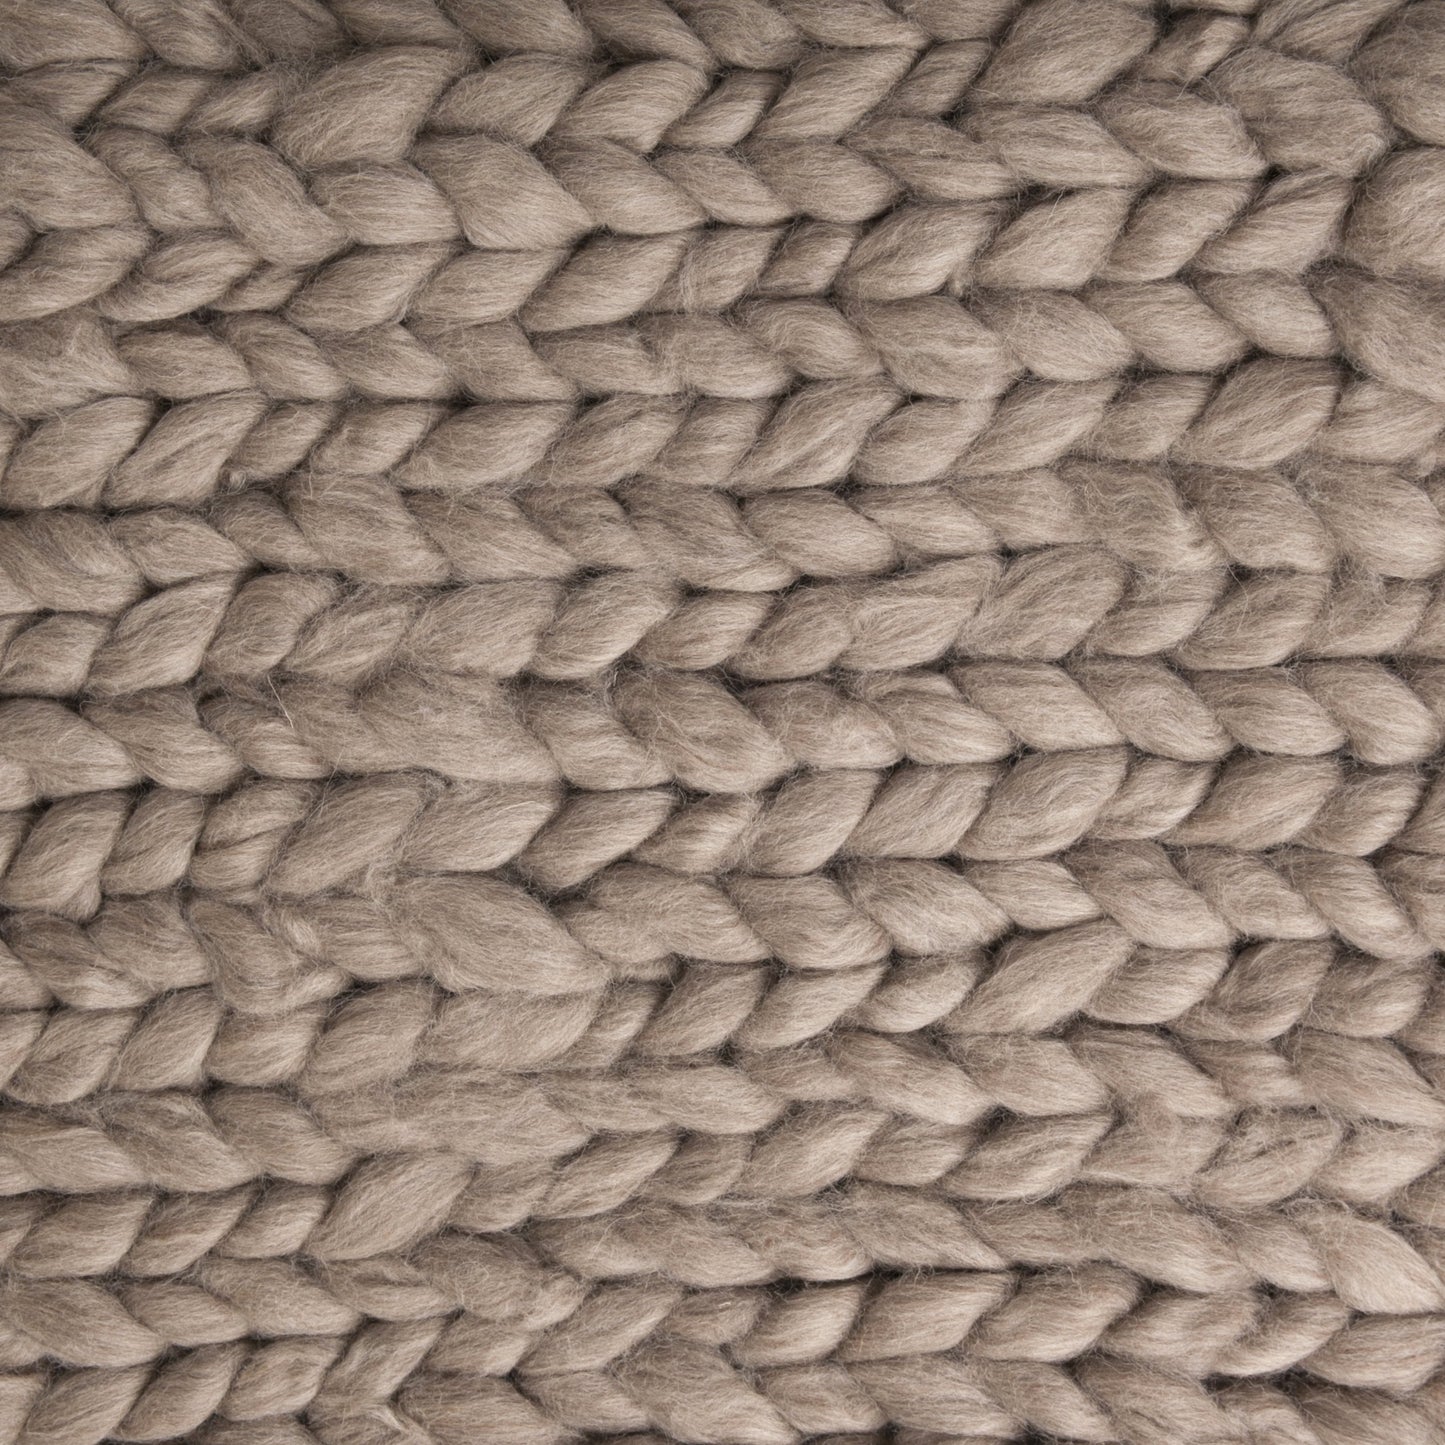 Maxi Manta em tricô artesanal feita com lã Moura 100% natural, sem tingimento. Cinto de couro Preto, com fivela de metal. 